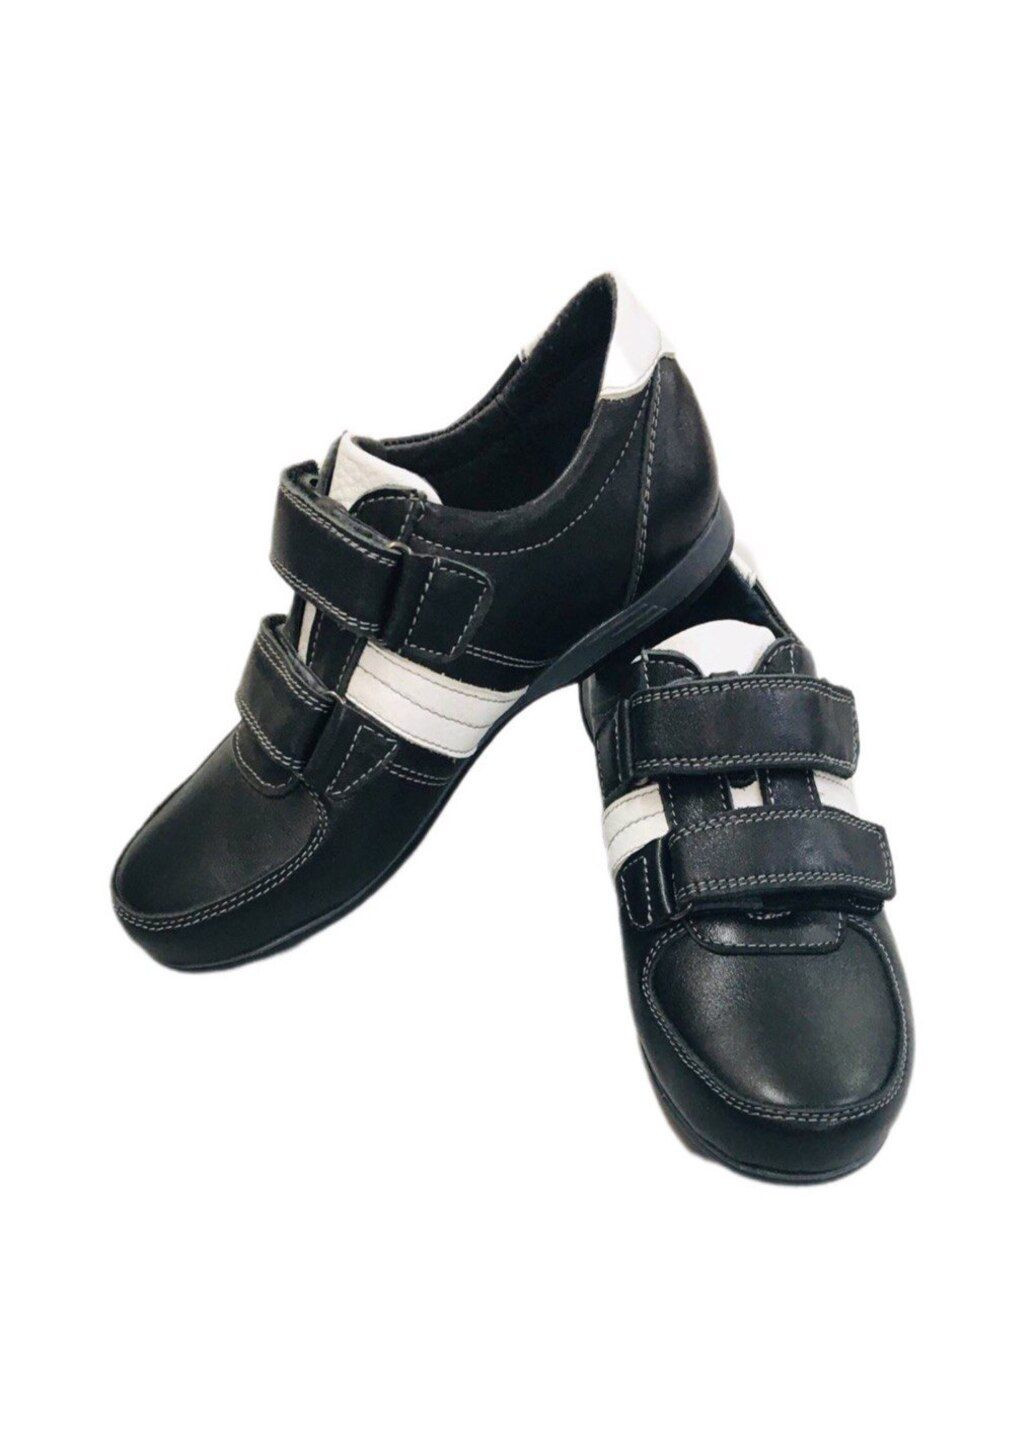 Черно-белые спортивные туфли для мальчика на липучке Seboni